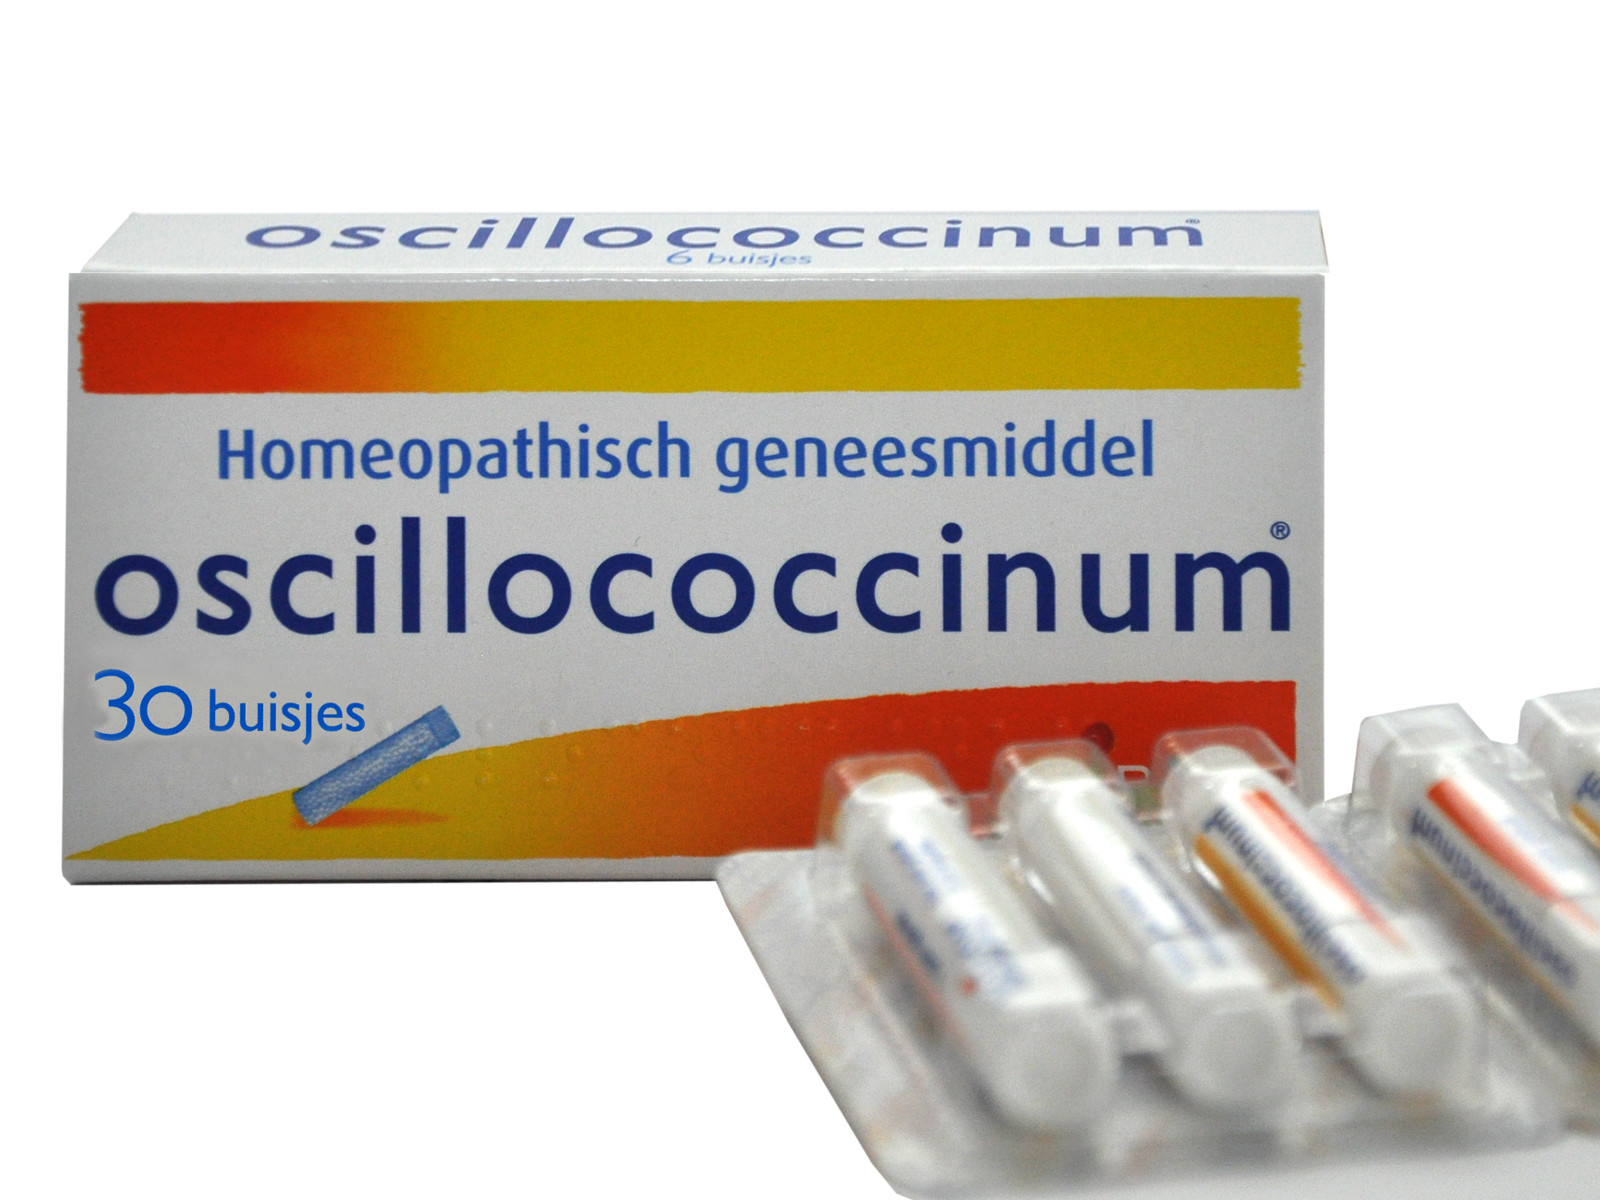 Oscillococcinum 30 stuks